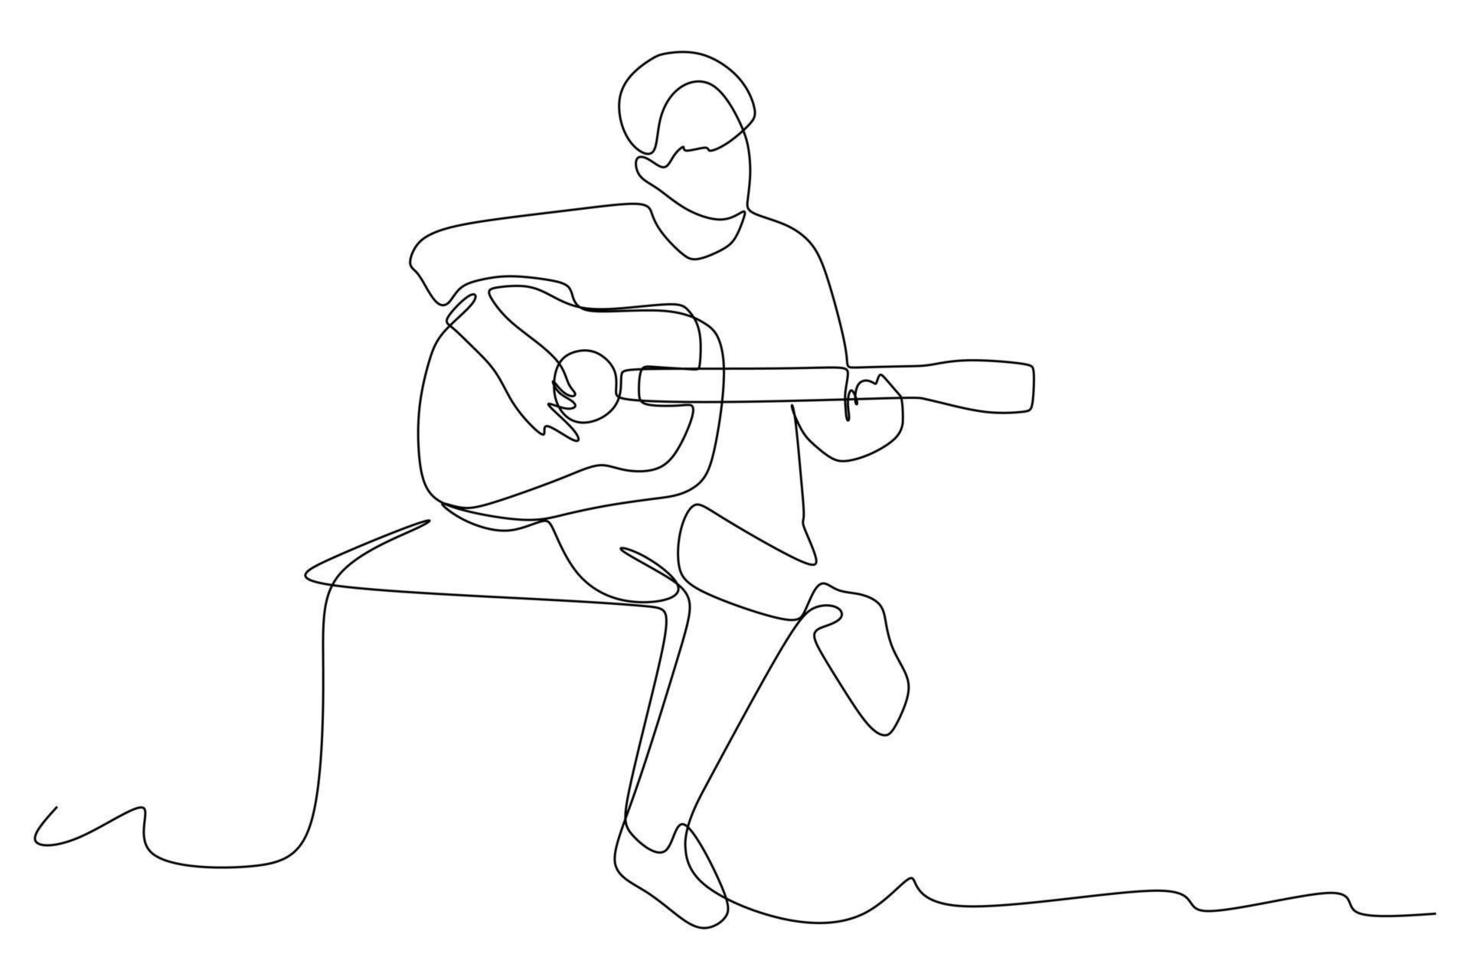 kontinuerlig linjeteckning av sittande gitarrist som spelar akustisk gitarr. dynamisk musiker konstnär prestanda koncept en rad grafisk rita design vektorillustration vektor